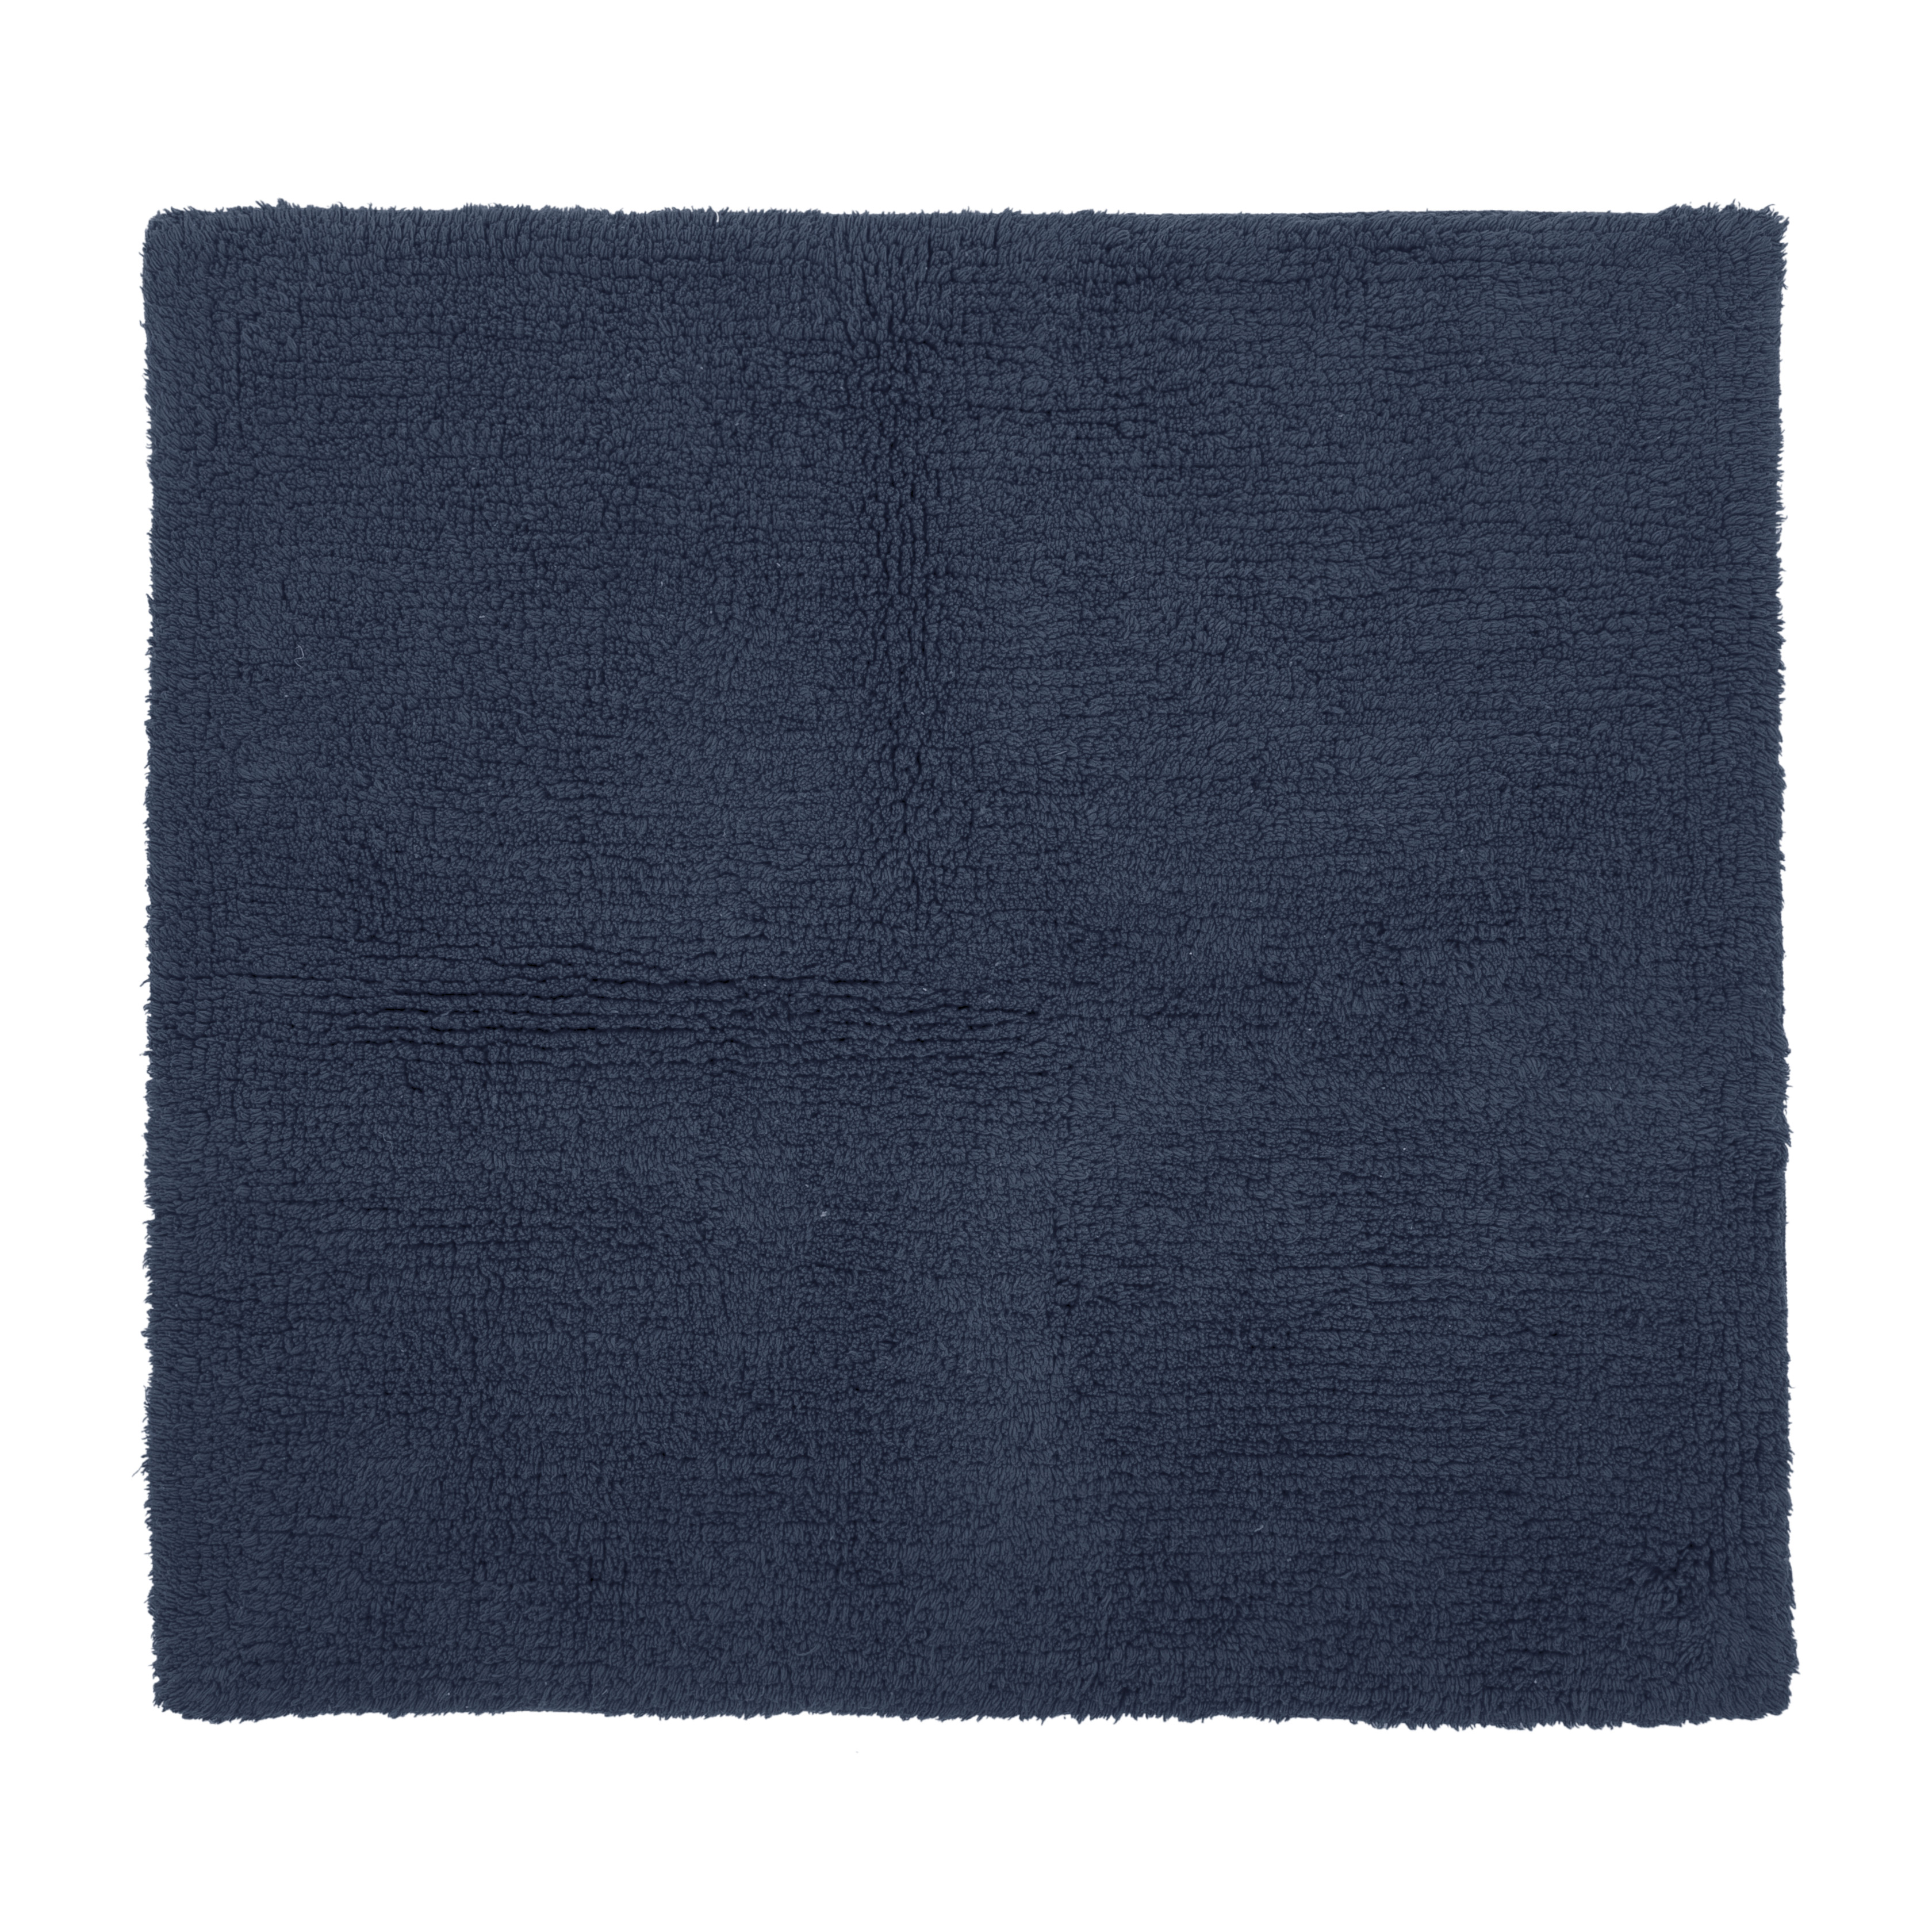 RIVA bath carpet - cotton anti-slip, 60x60cm, blue insigna